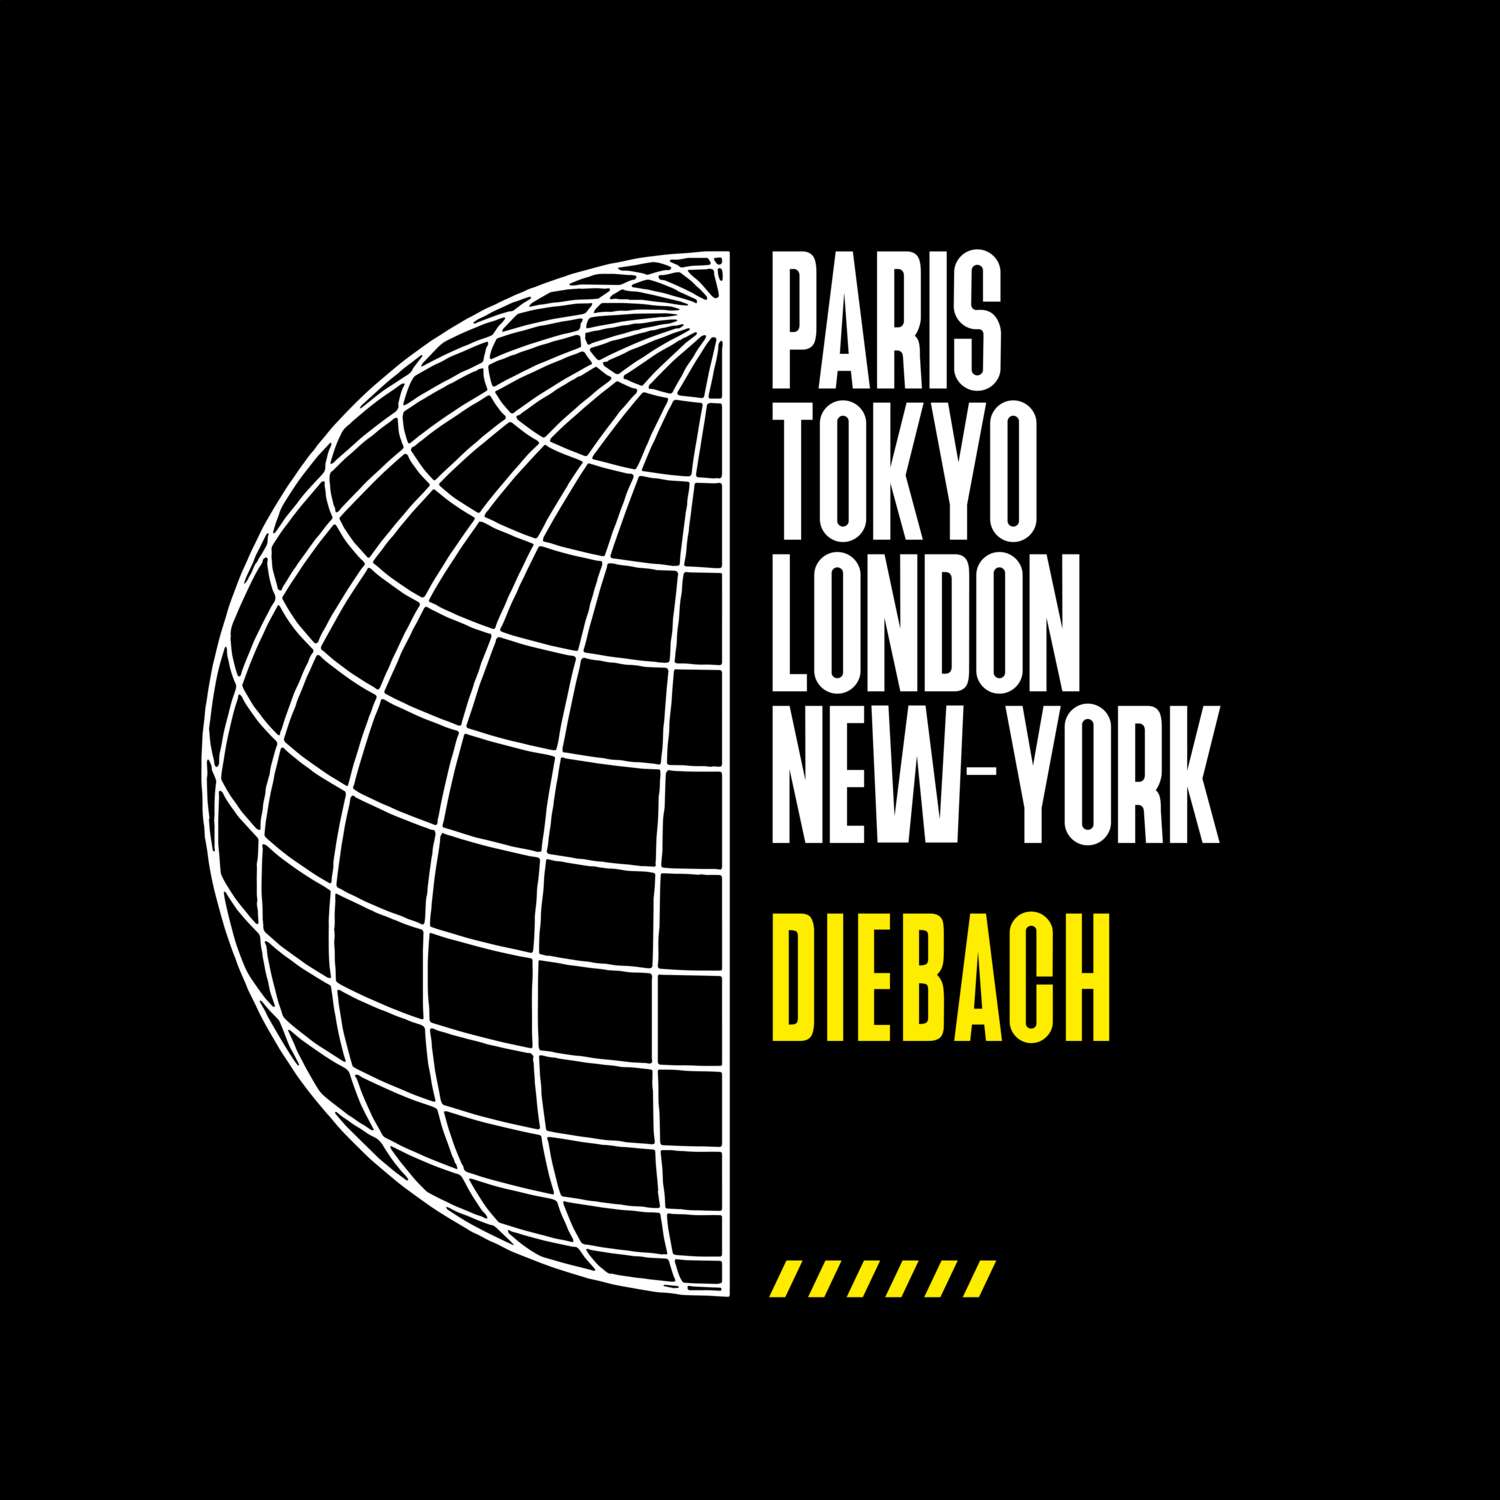 Diebach T-Shirt »Paris Tokyo London«